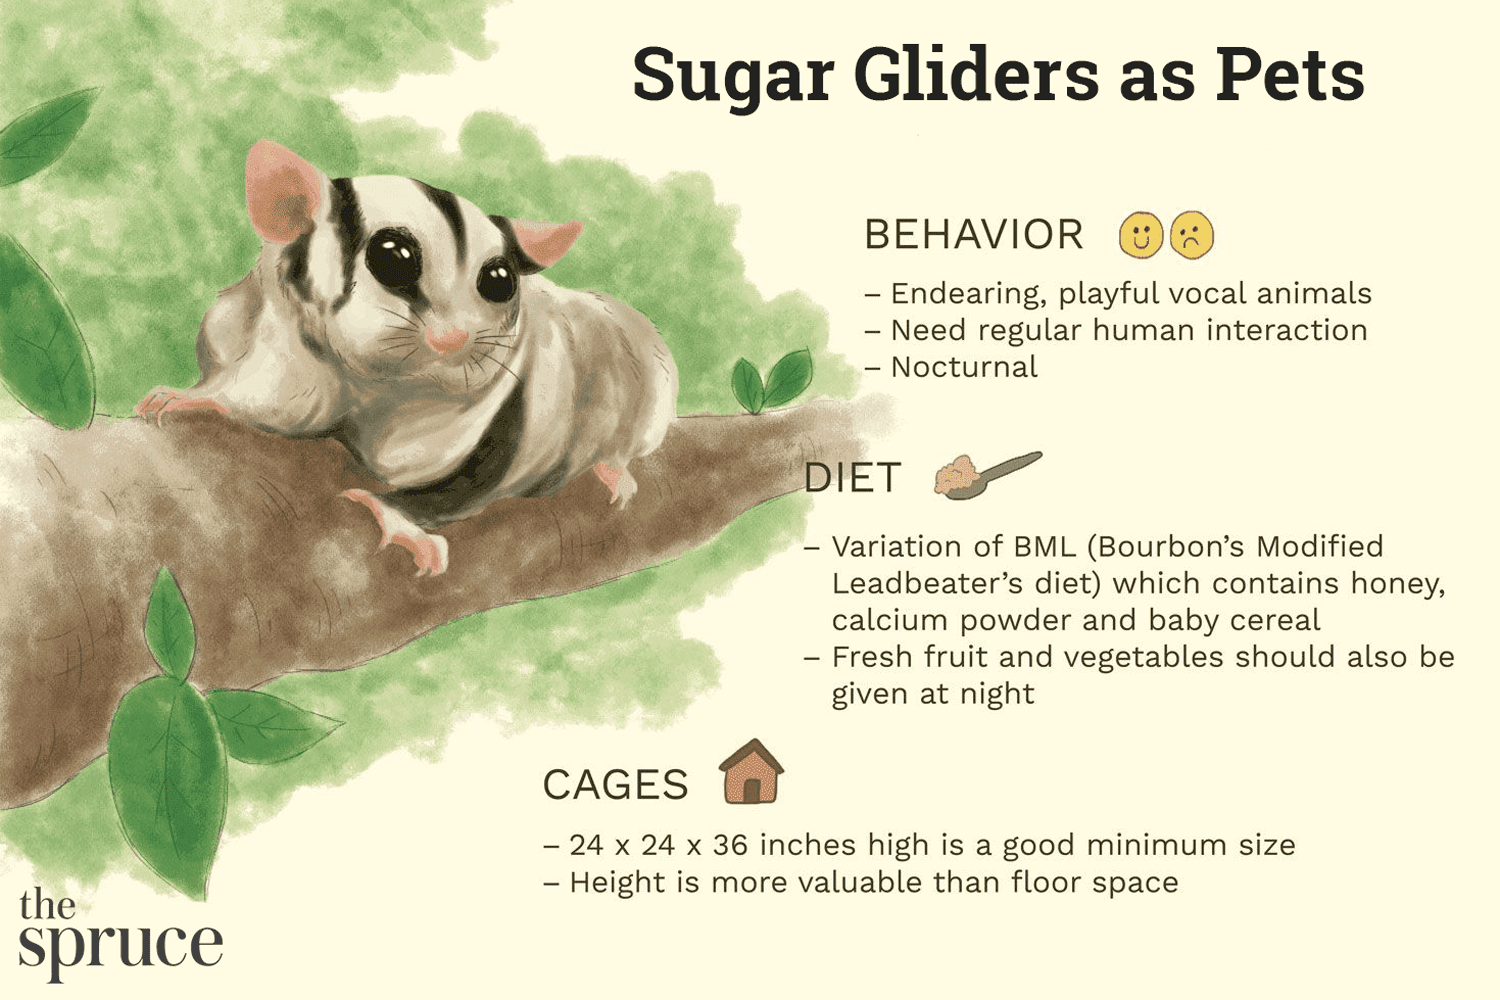 Você deve manter o Sugar Glider como animal de estimação?